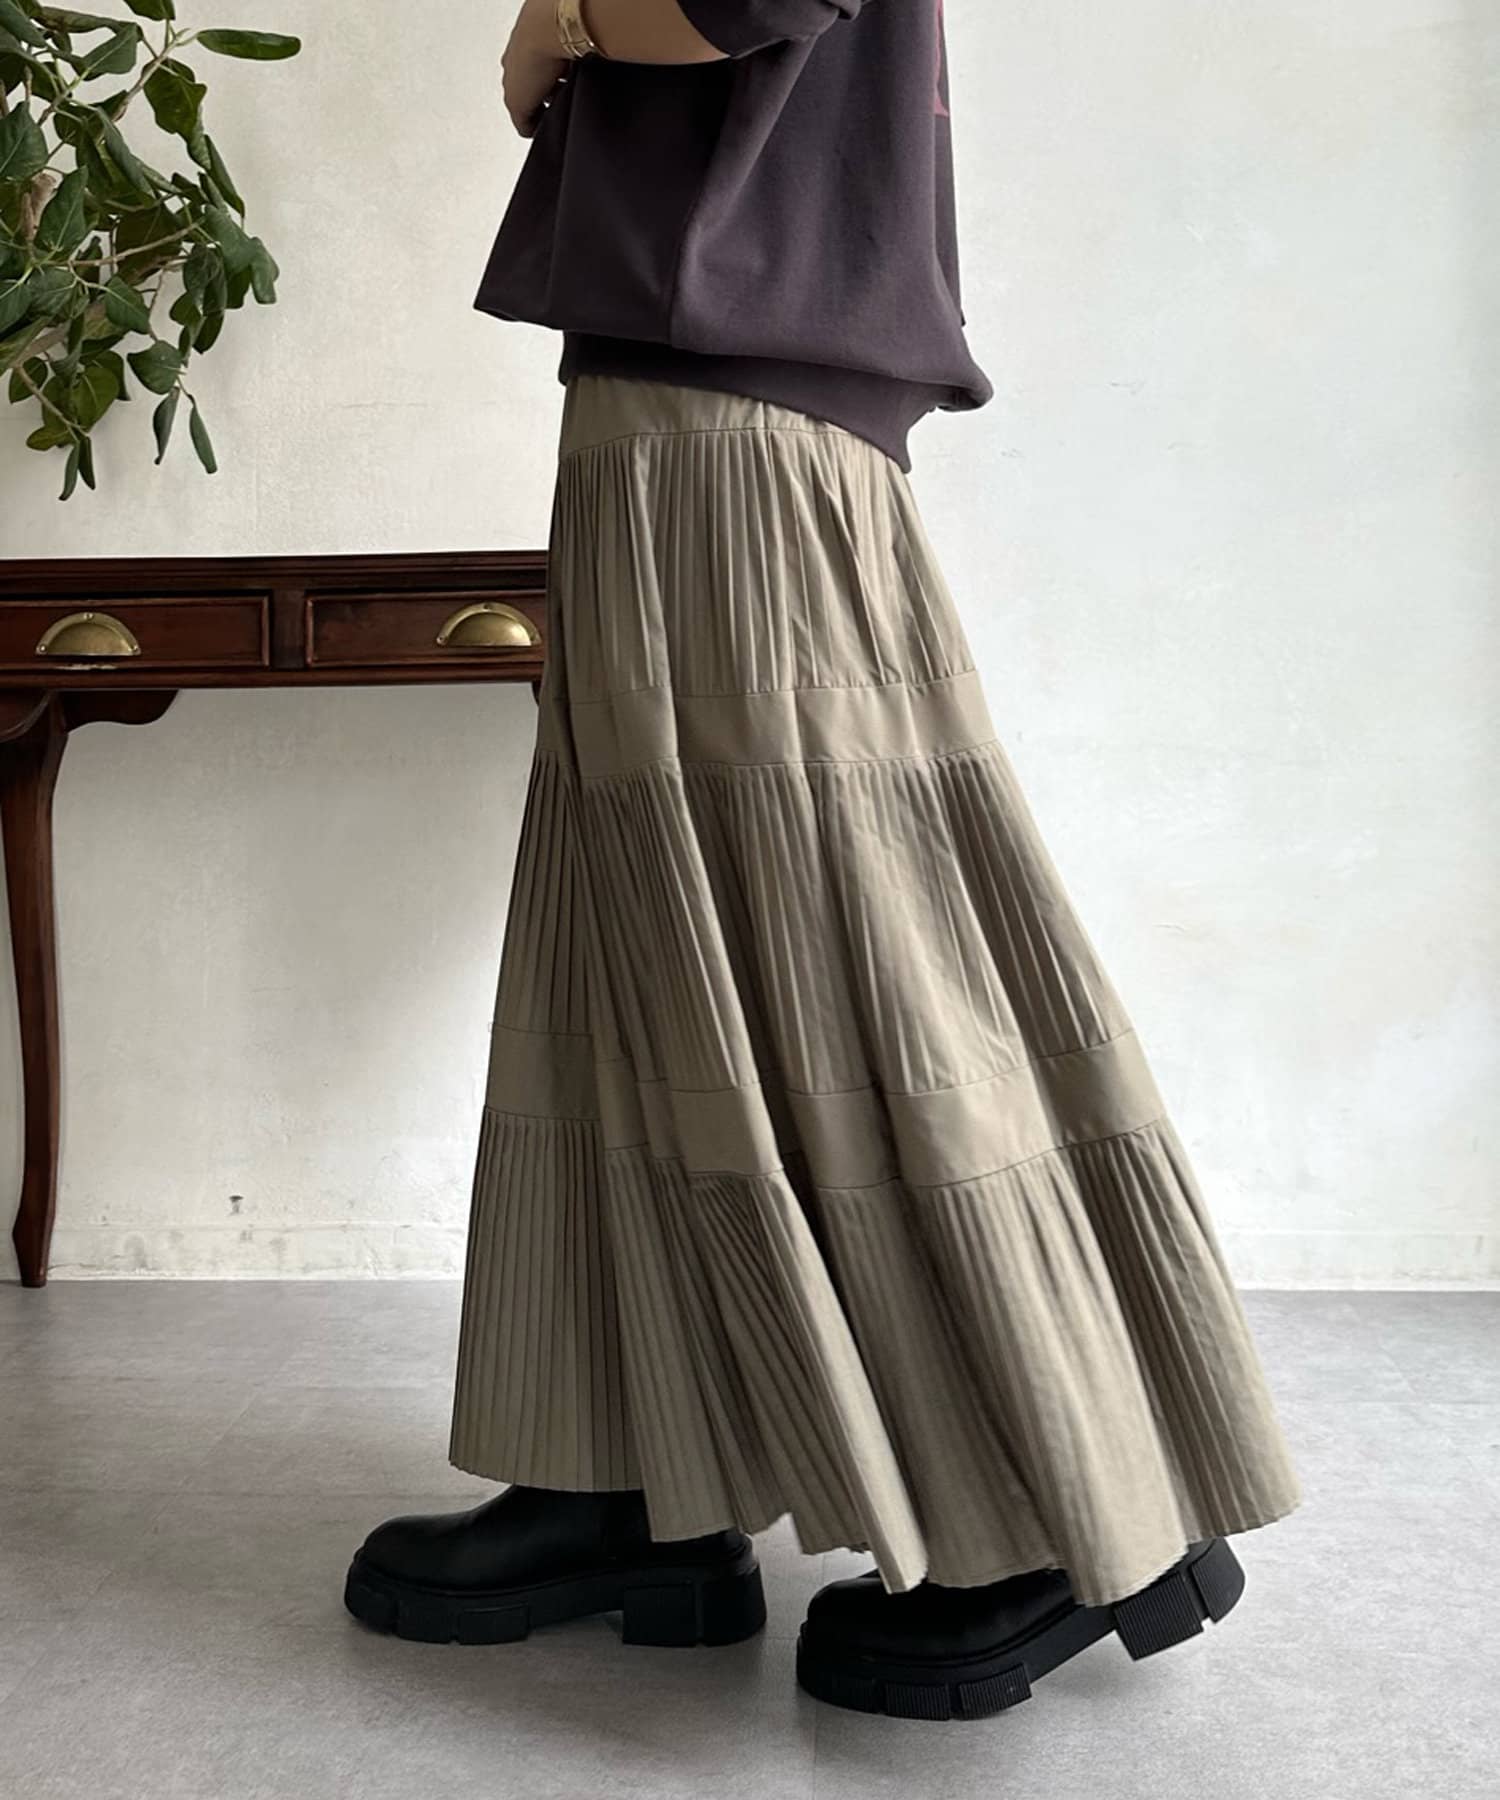 スカートは他にもありますDOUDOU(ドゥドゥ)ひざ丈ロングスカート 柄ミモレ白黒ベージュフレア人気完売